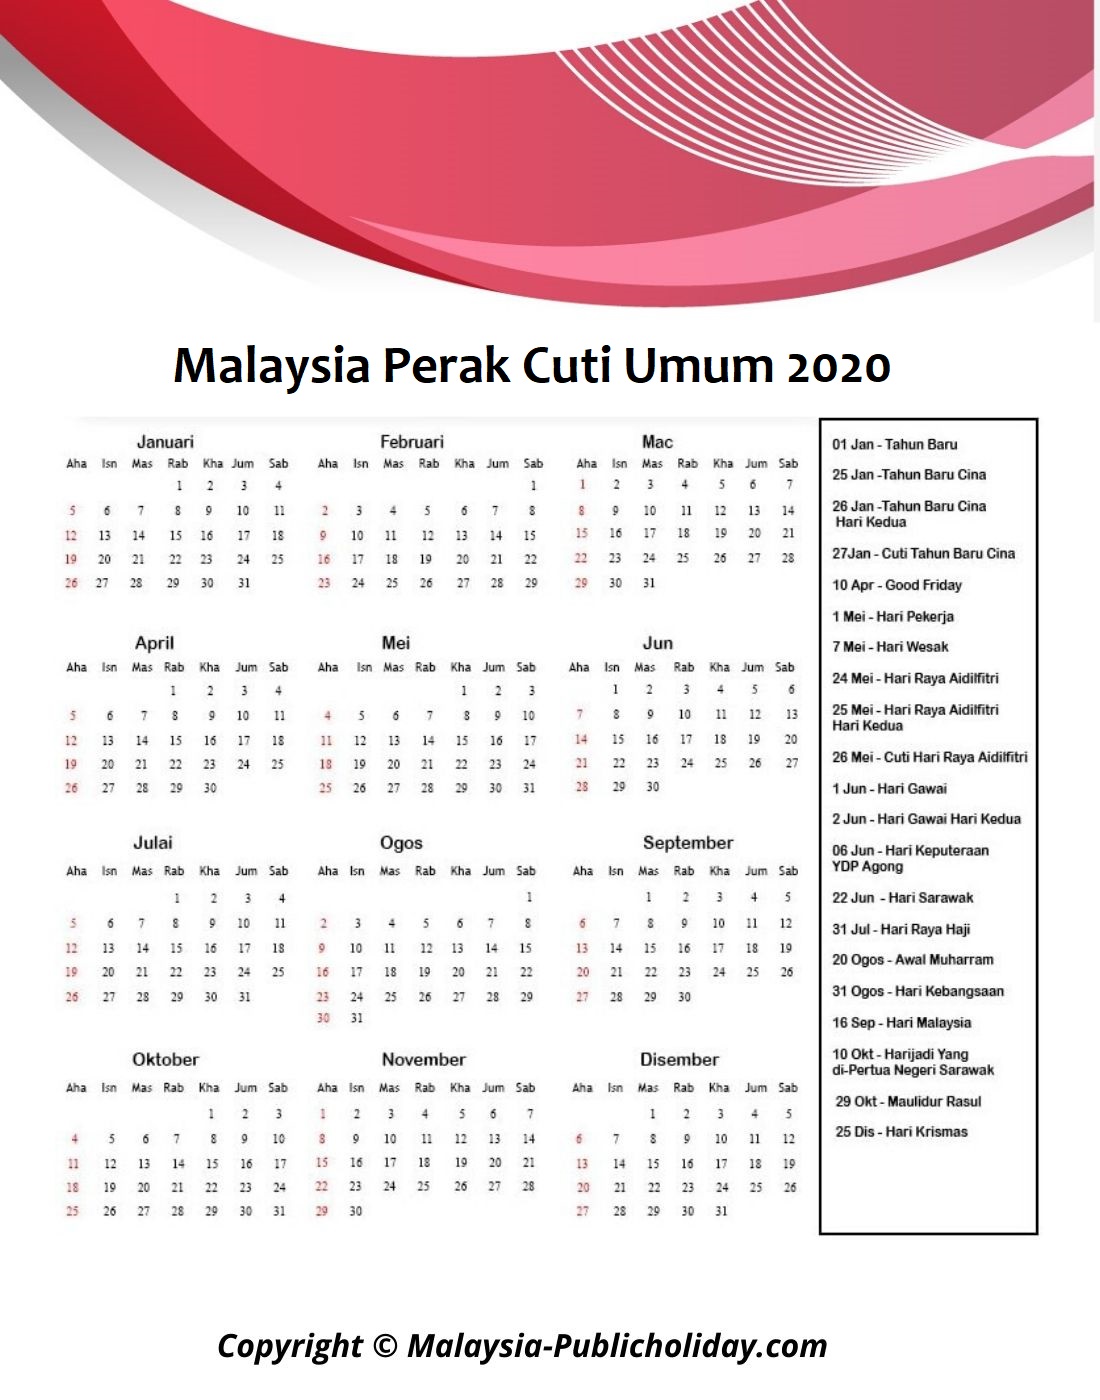 Kalendar Perak 2020 Malaysia